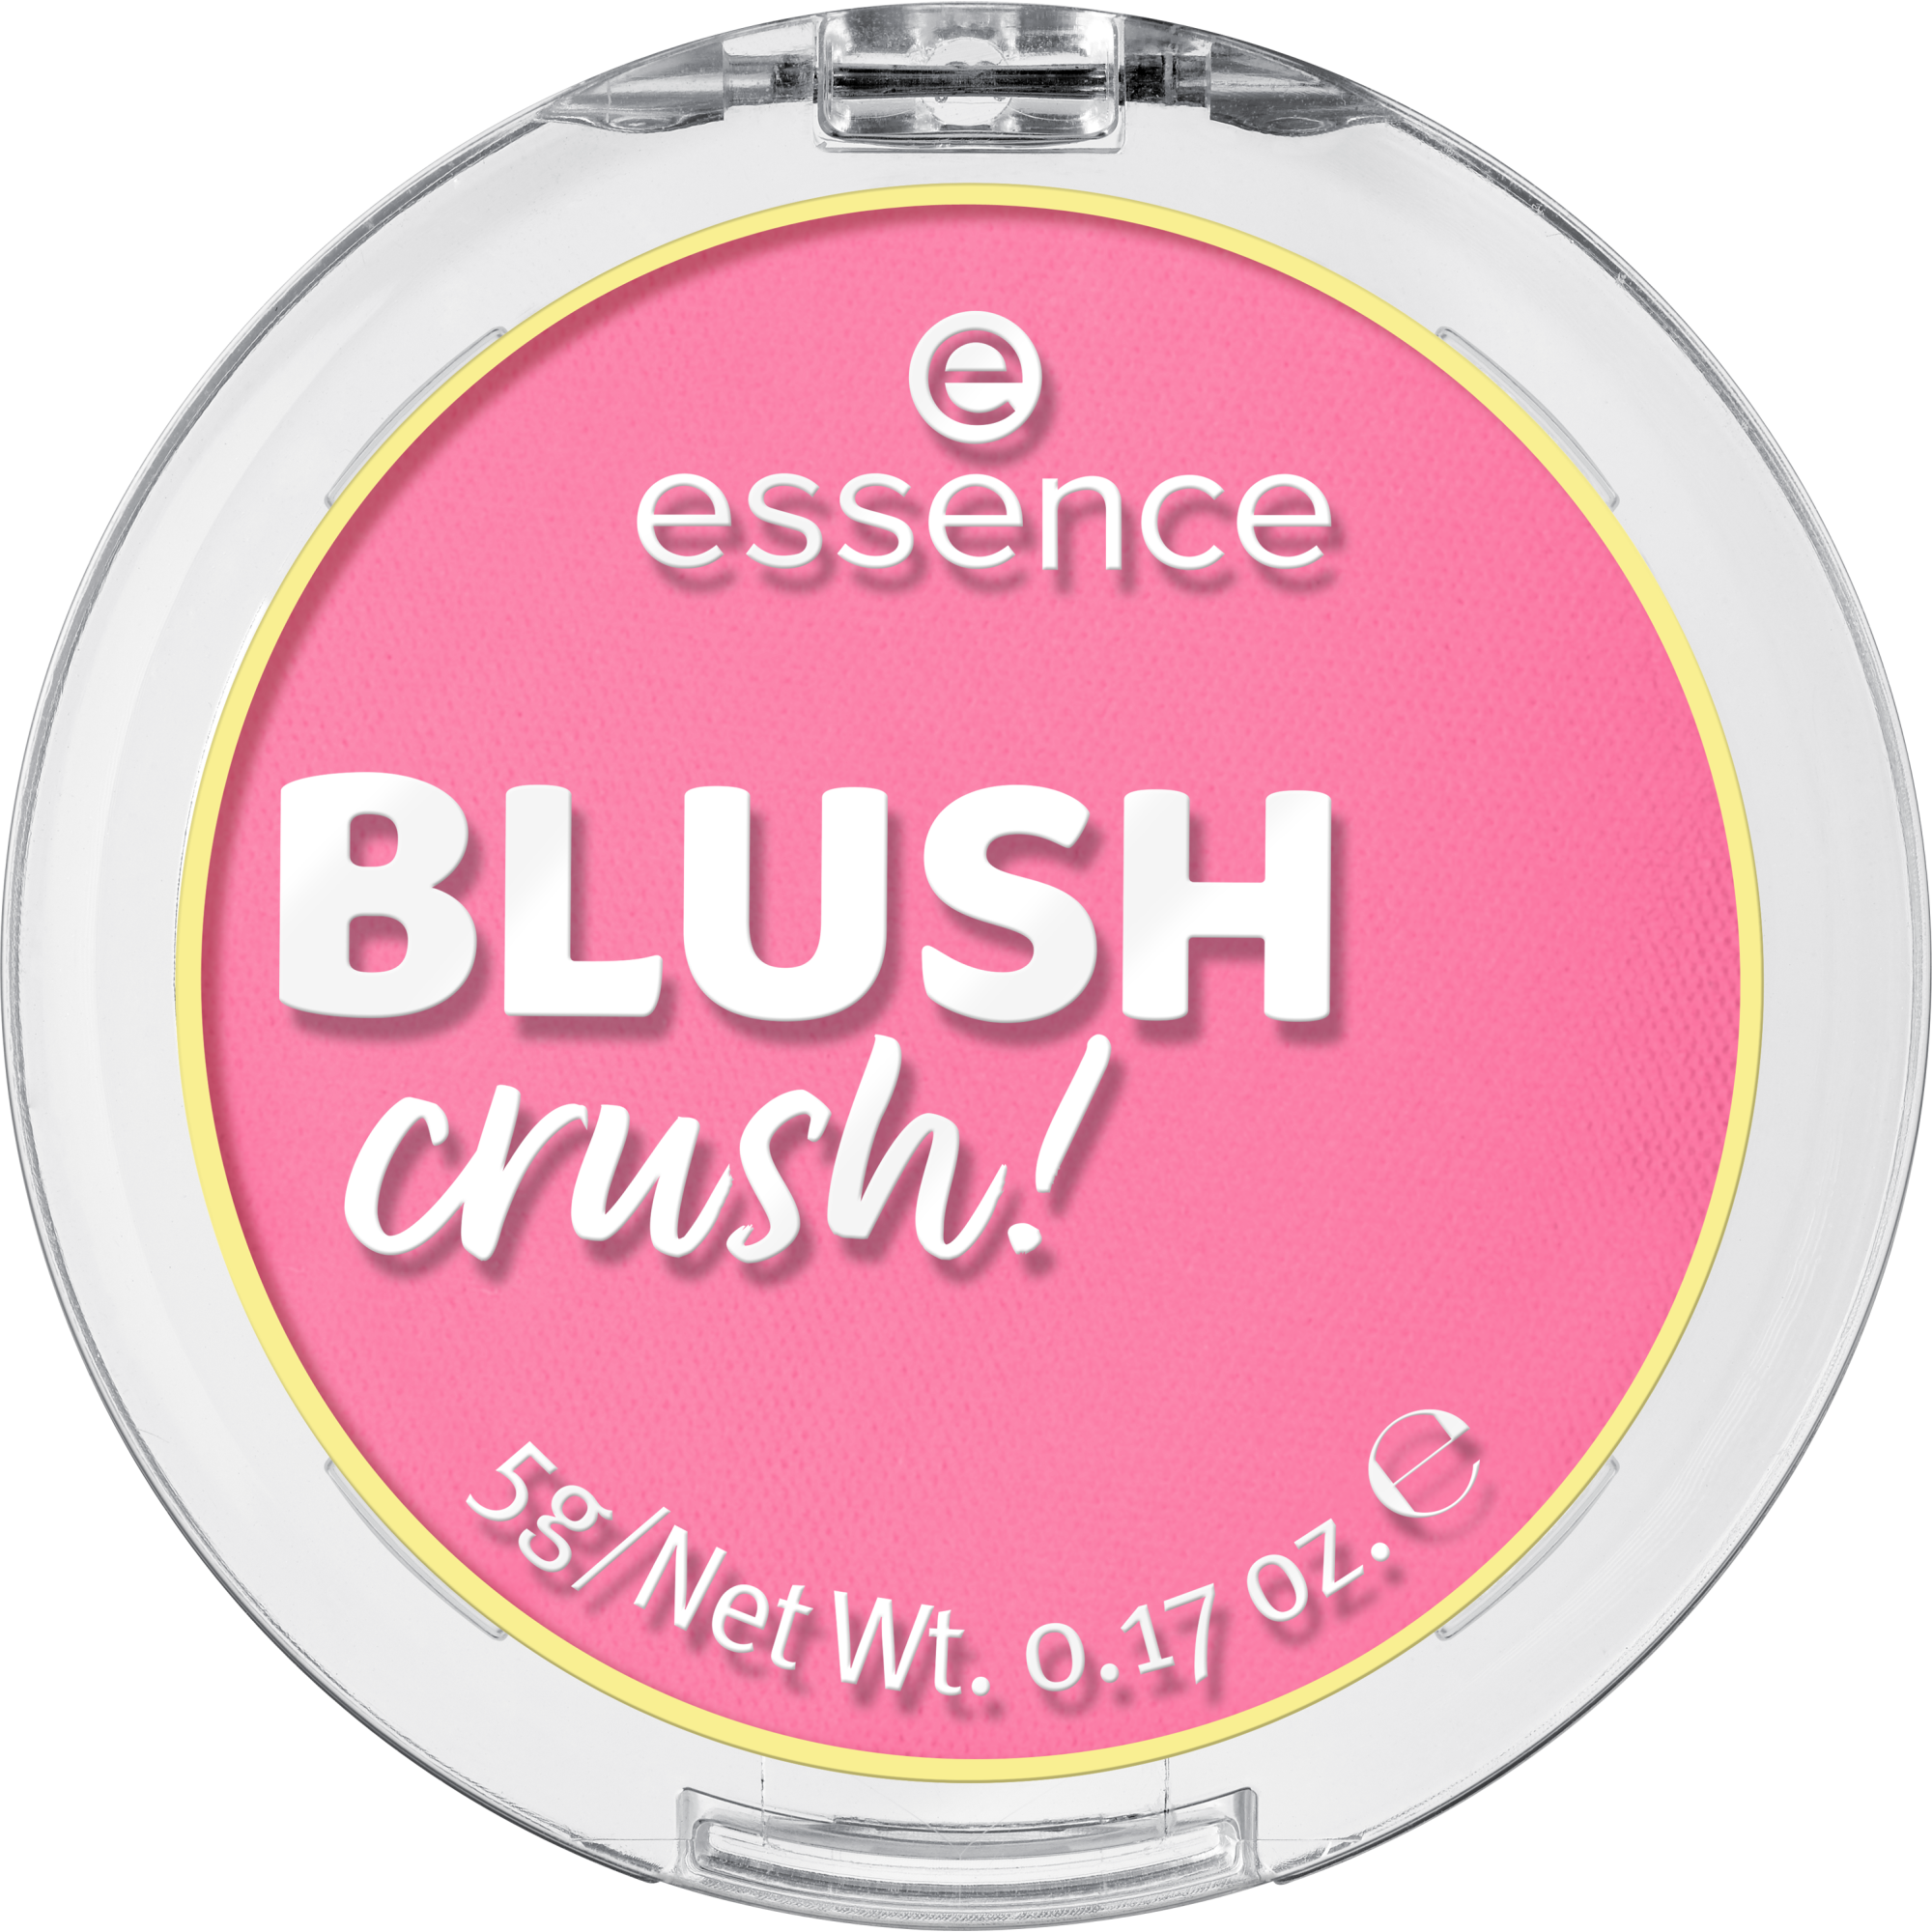 BLUSH crush!